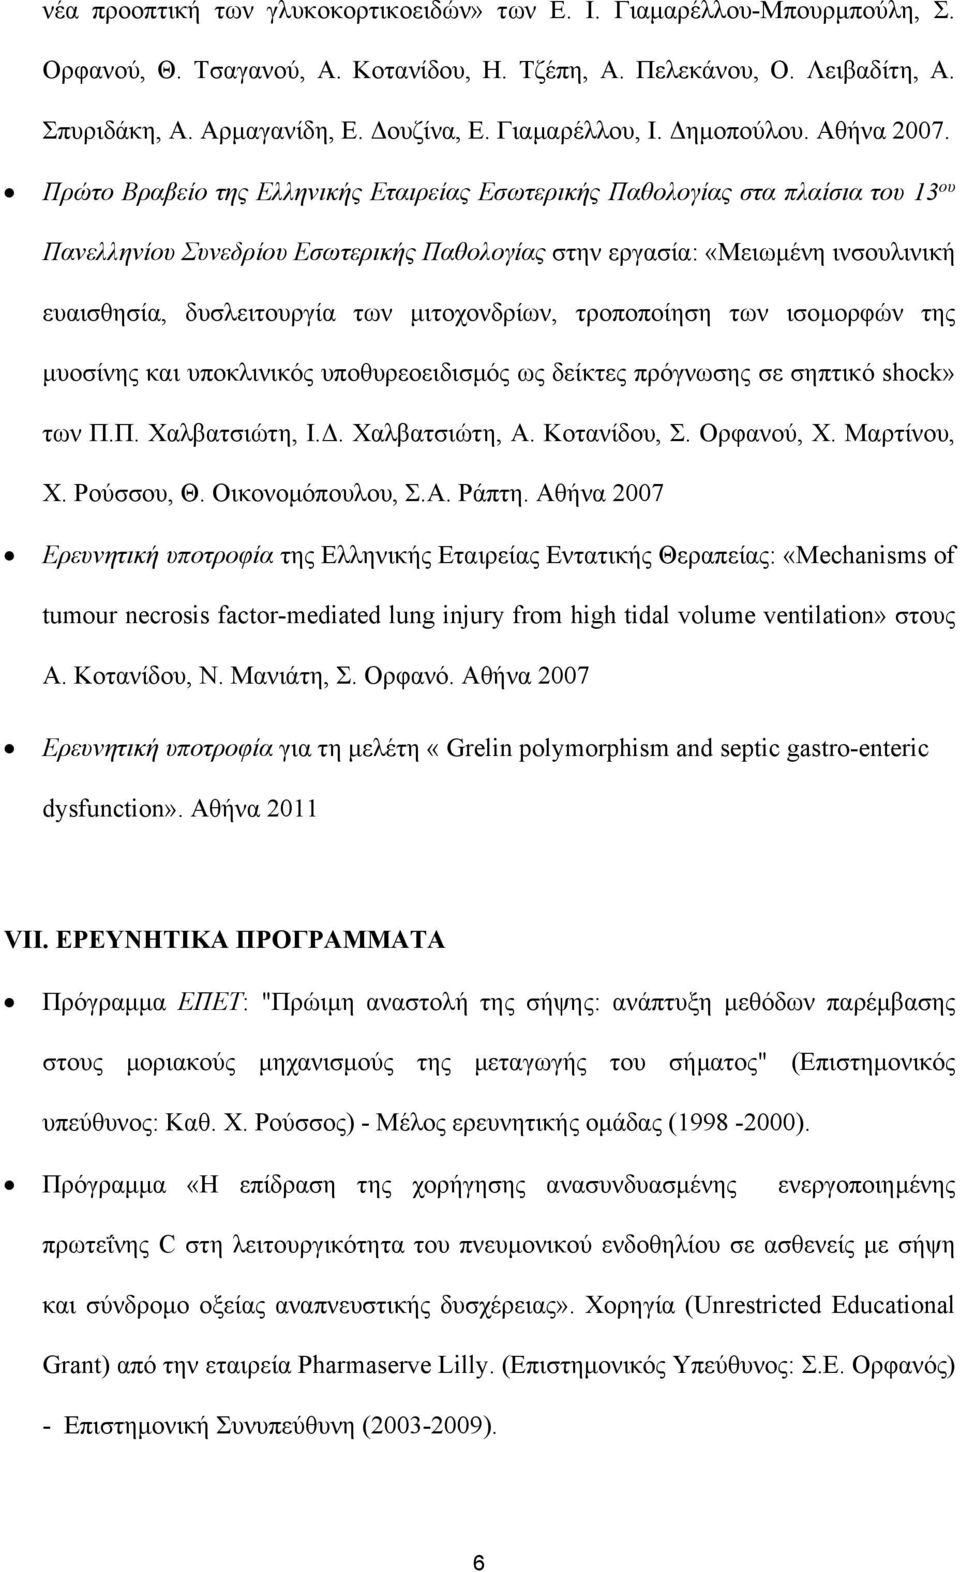 Πρώτο Βραβείο της Ελληνικής Εταιρείας Εσωτερικής Παθολογίας στα πλαίσια του 13 ου Πανελληνίου Συνεδρίου Εσωτερικής Παθολογίας στην εργασία: «Μειωμένη ινσουλινική ευαισθησία, δυσλειτουργία των